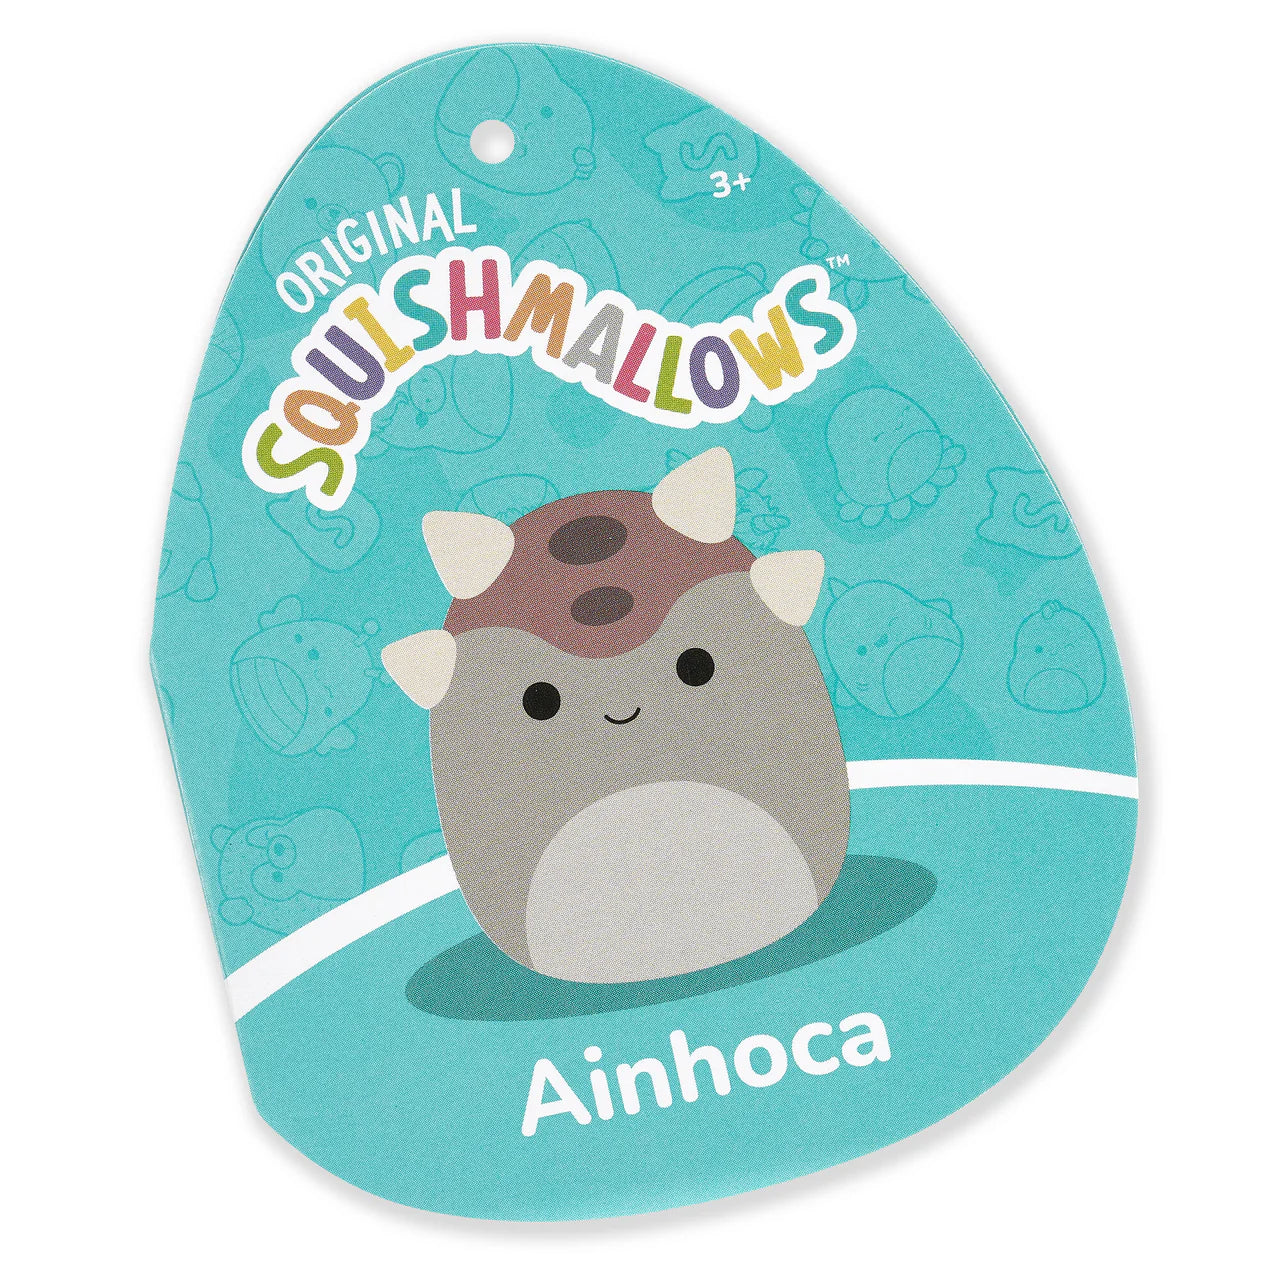 Ainhoca Squishmallow